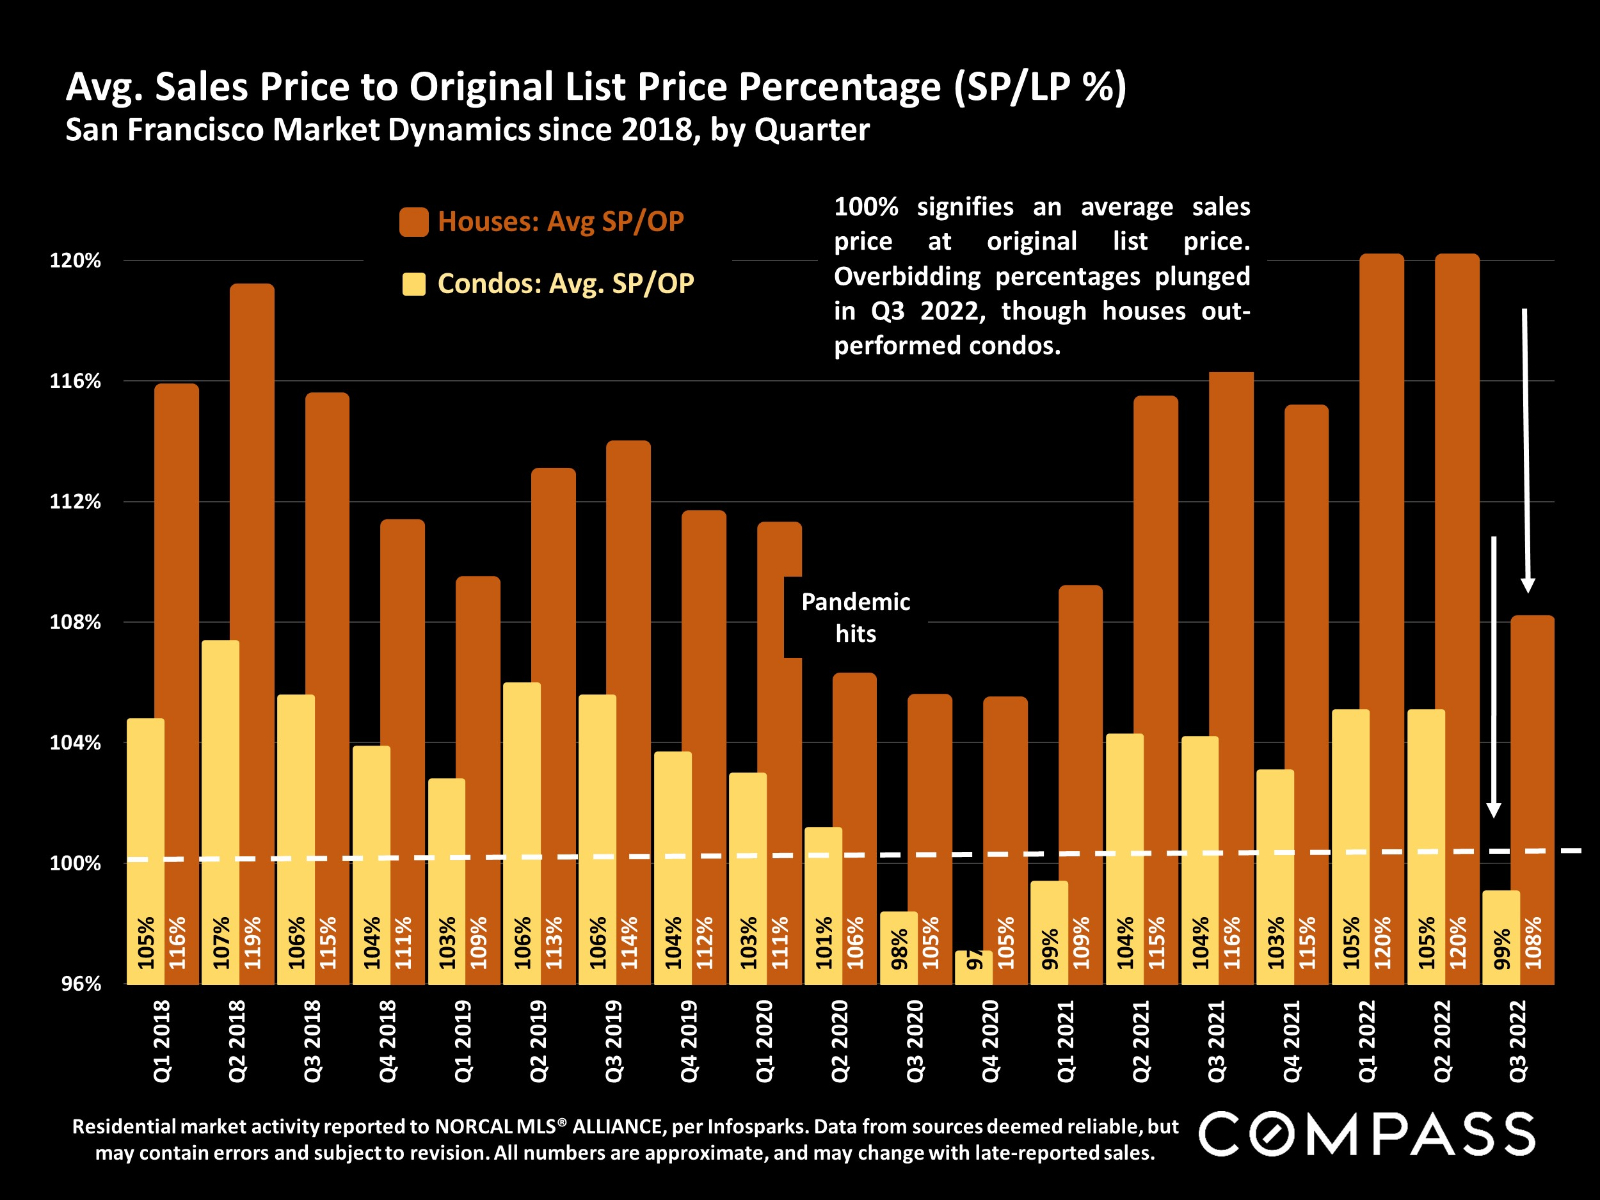 Average Sales Price to Original List Price